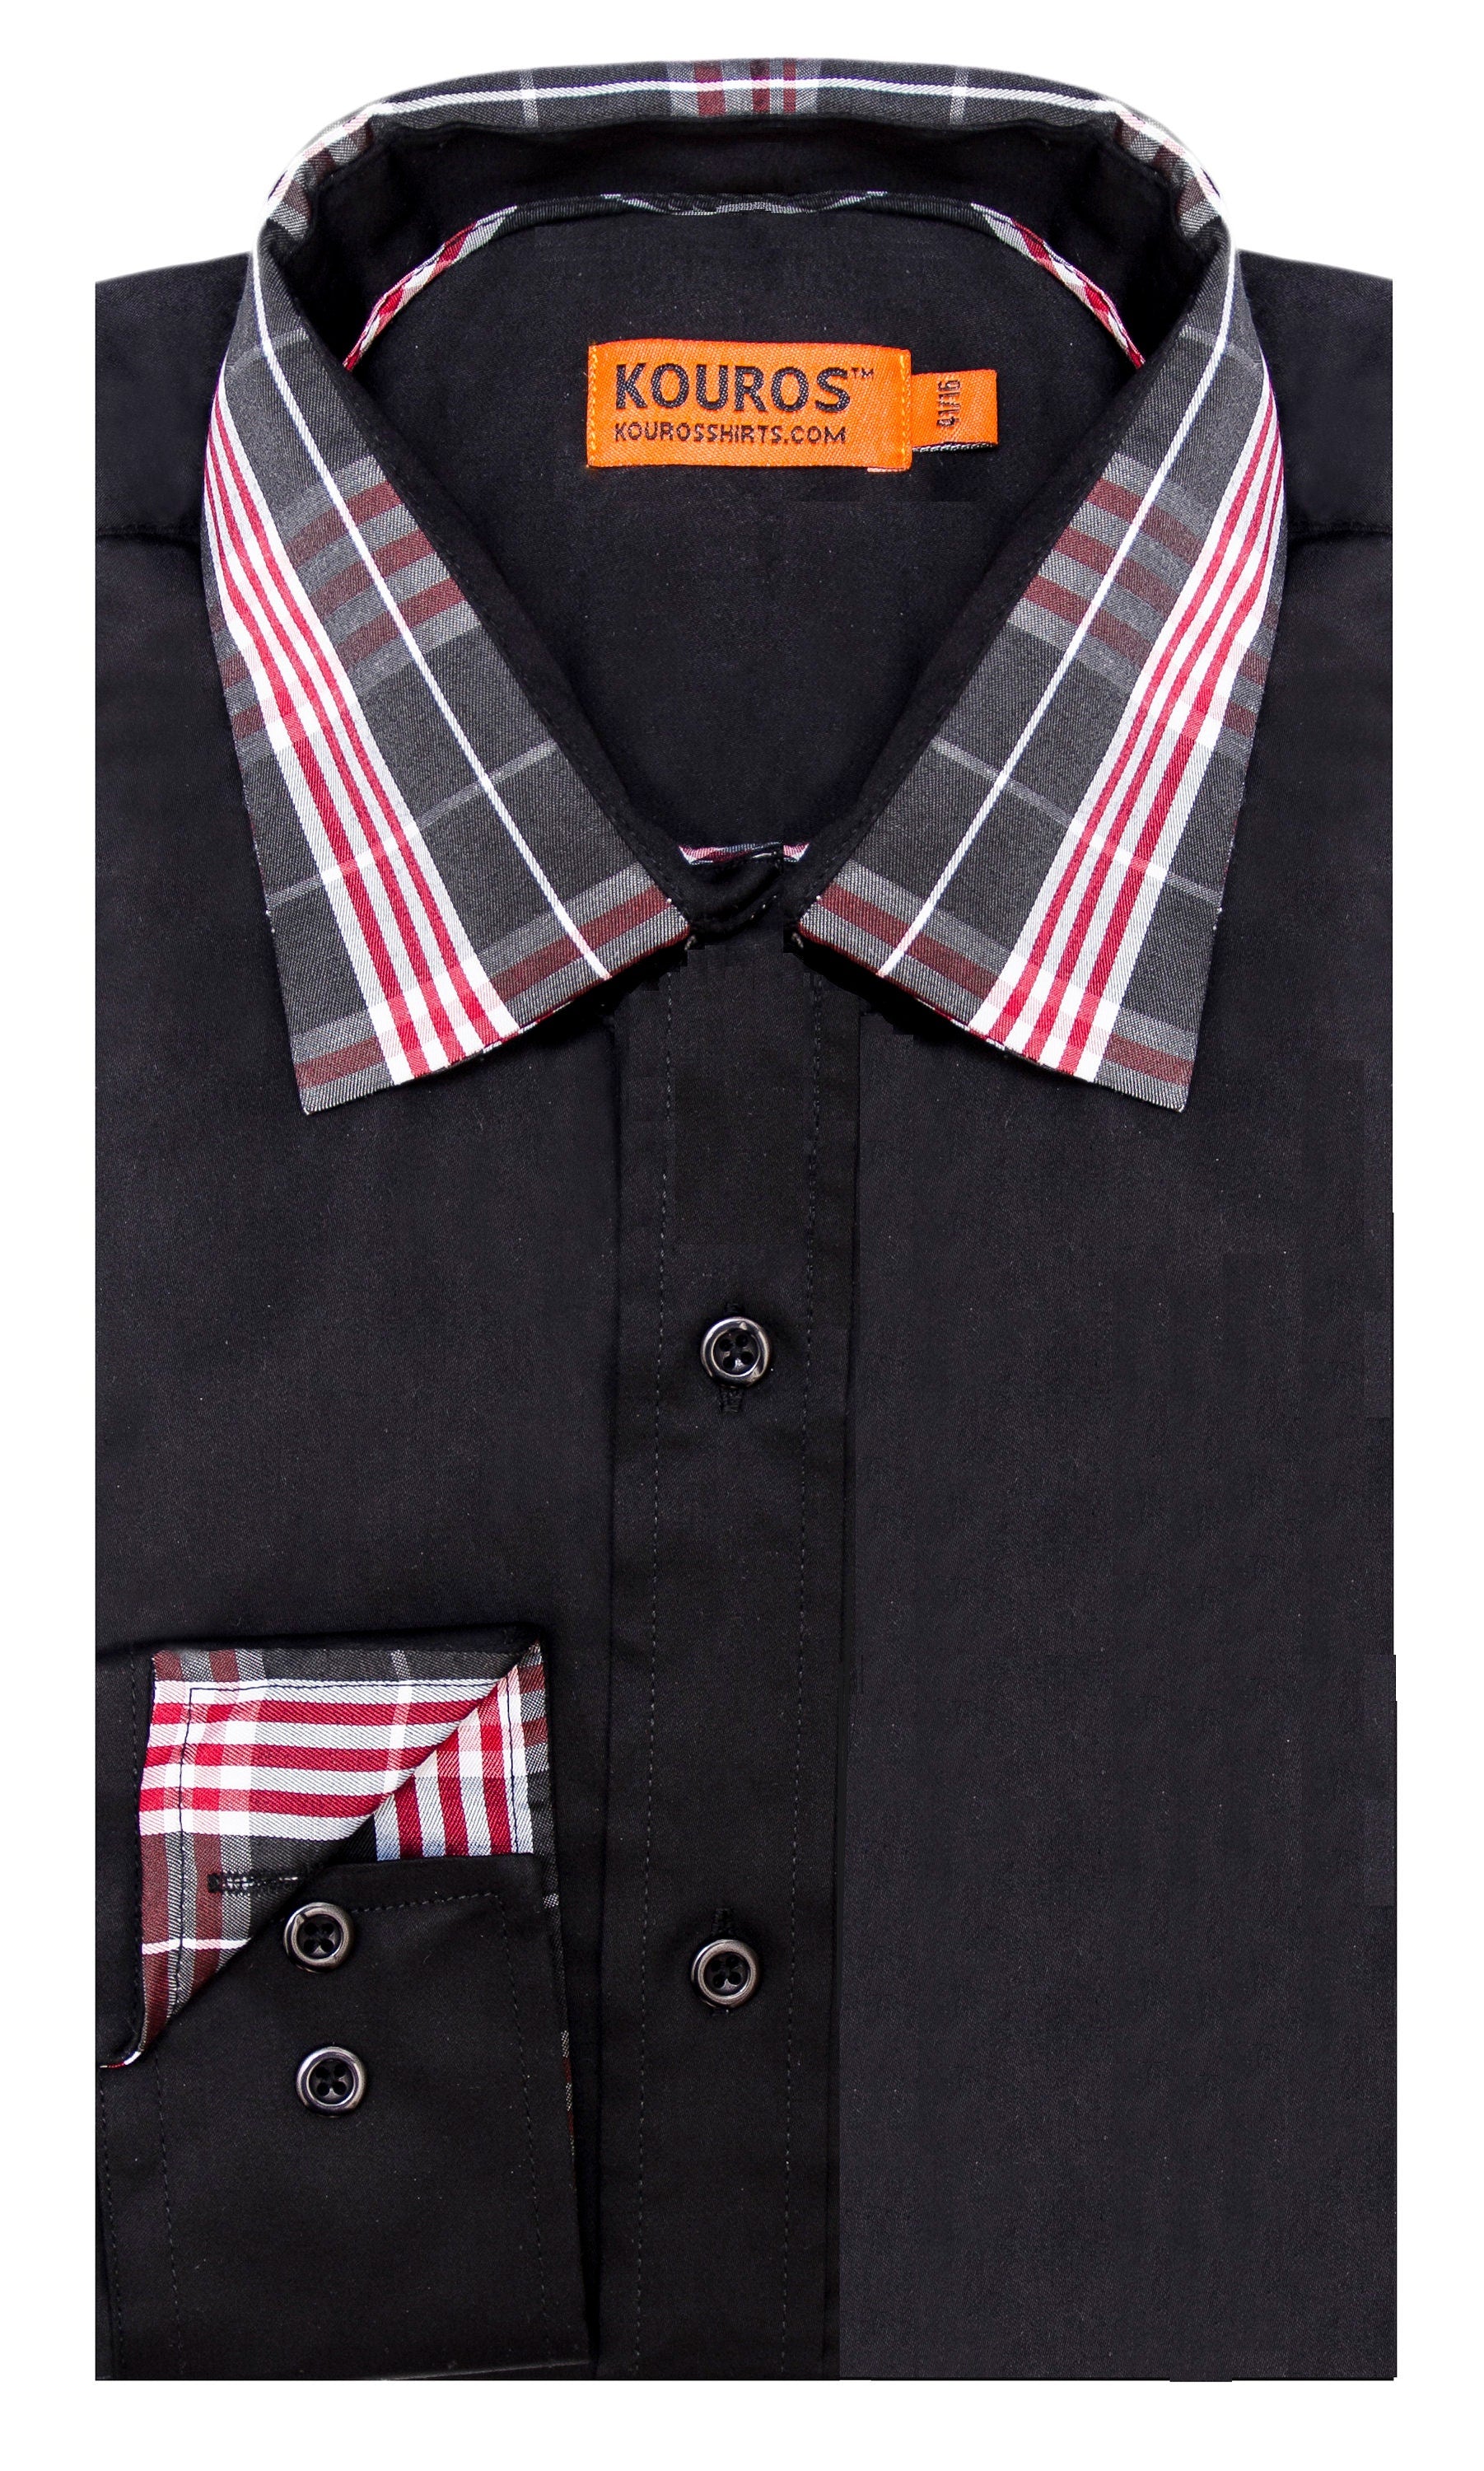 KOVROS Men's Premium Designer Dress Shirt, Black